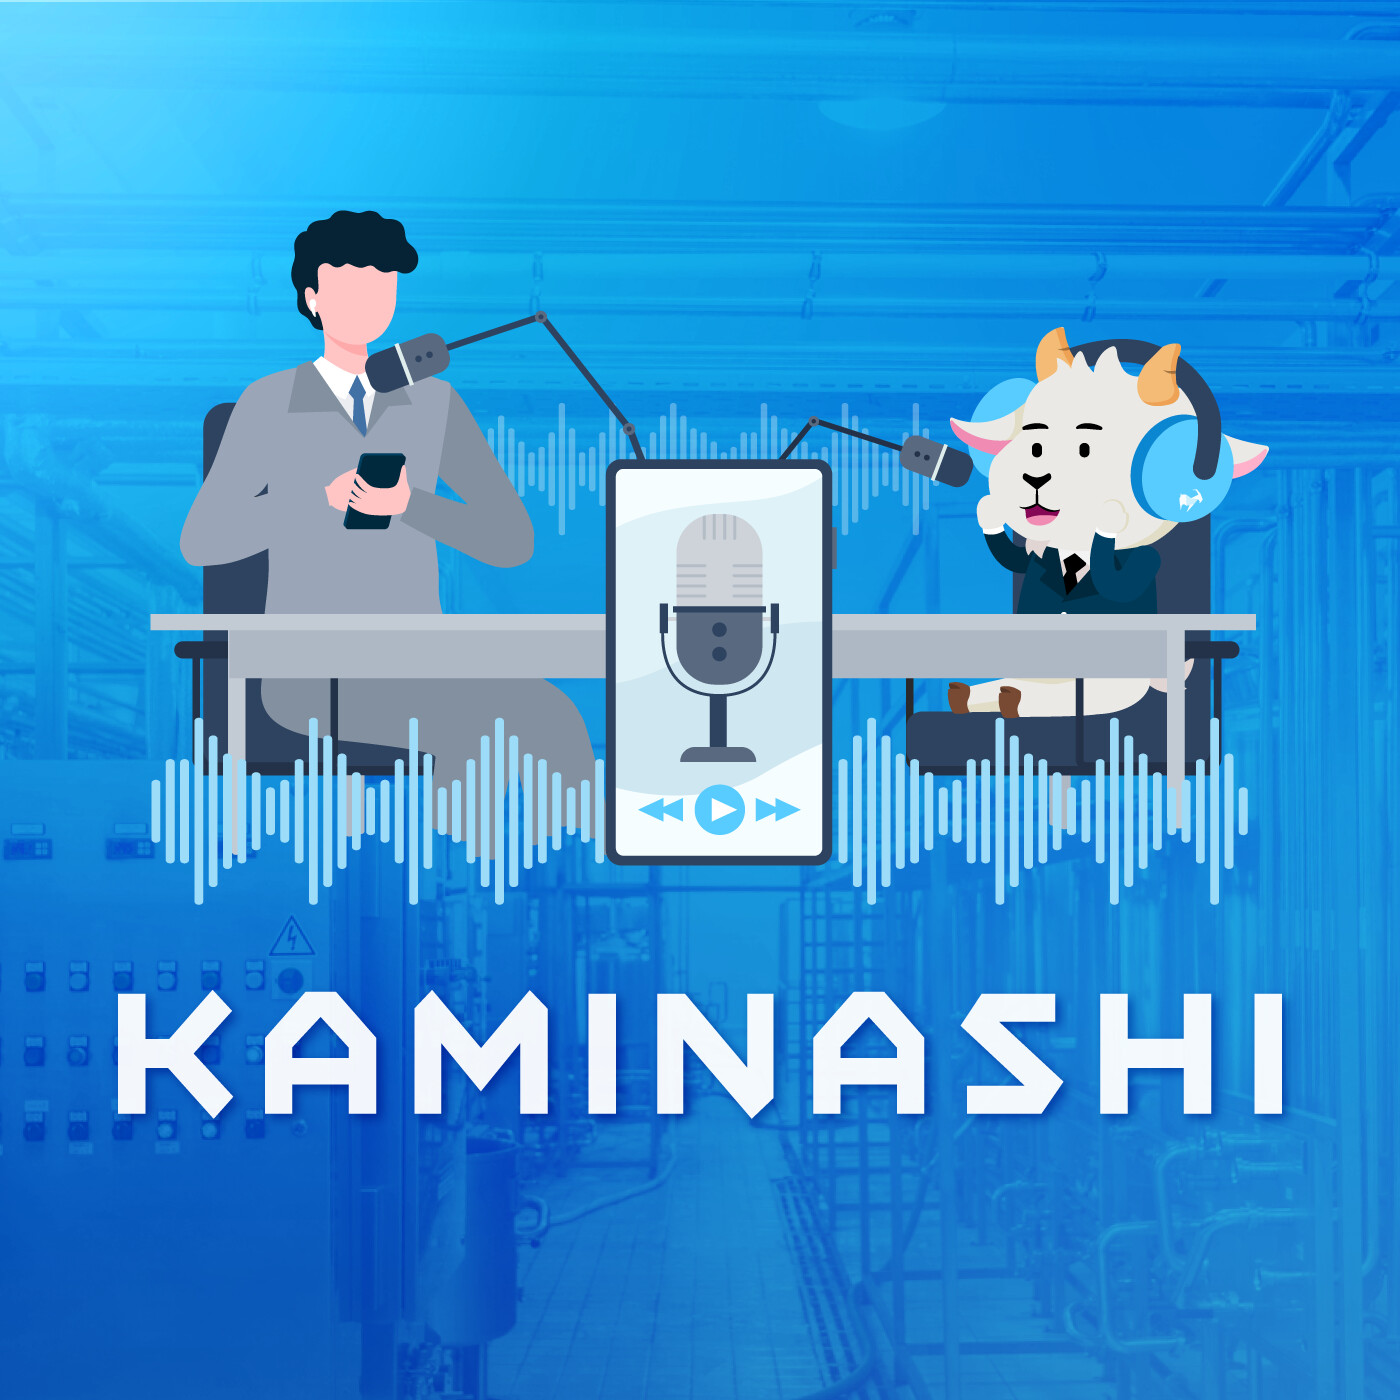 【interview-06:カミナシ 河内さん】採用・広報目的で始めたポッドキャストがブランディングツールに。カミナシが「SaaS」と「テクノロジー」に特化した音声メディアを立ち上げたワケ